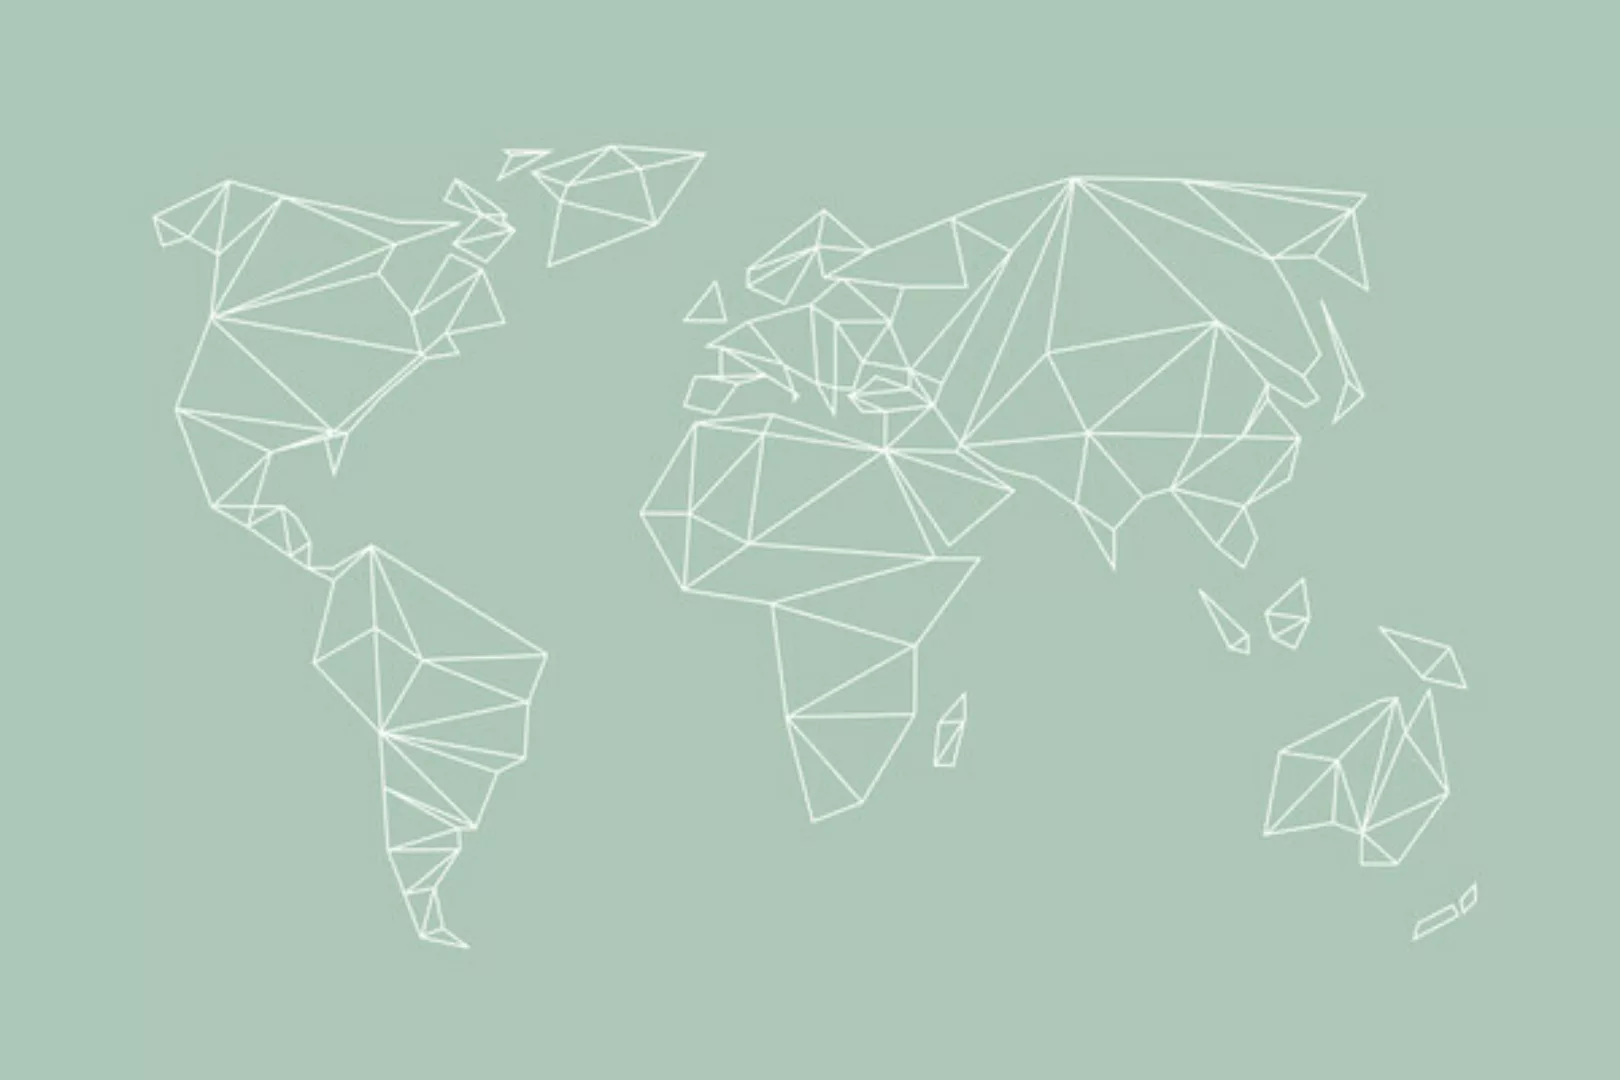 Poster / Leinwandbild - Weltkarte - Geometrical World Map - Pastel Sage Gre günstig online kaufen